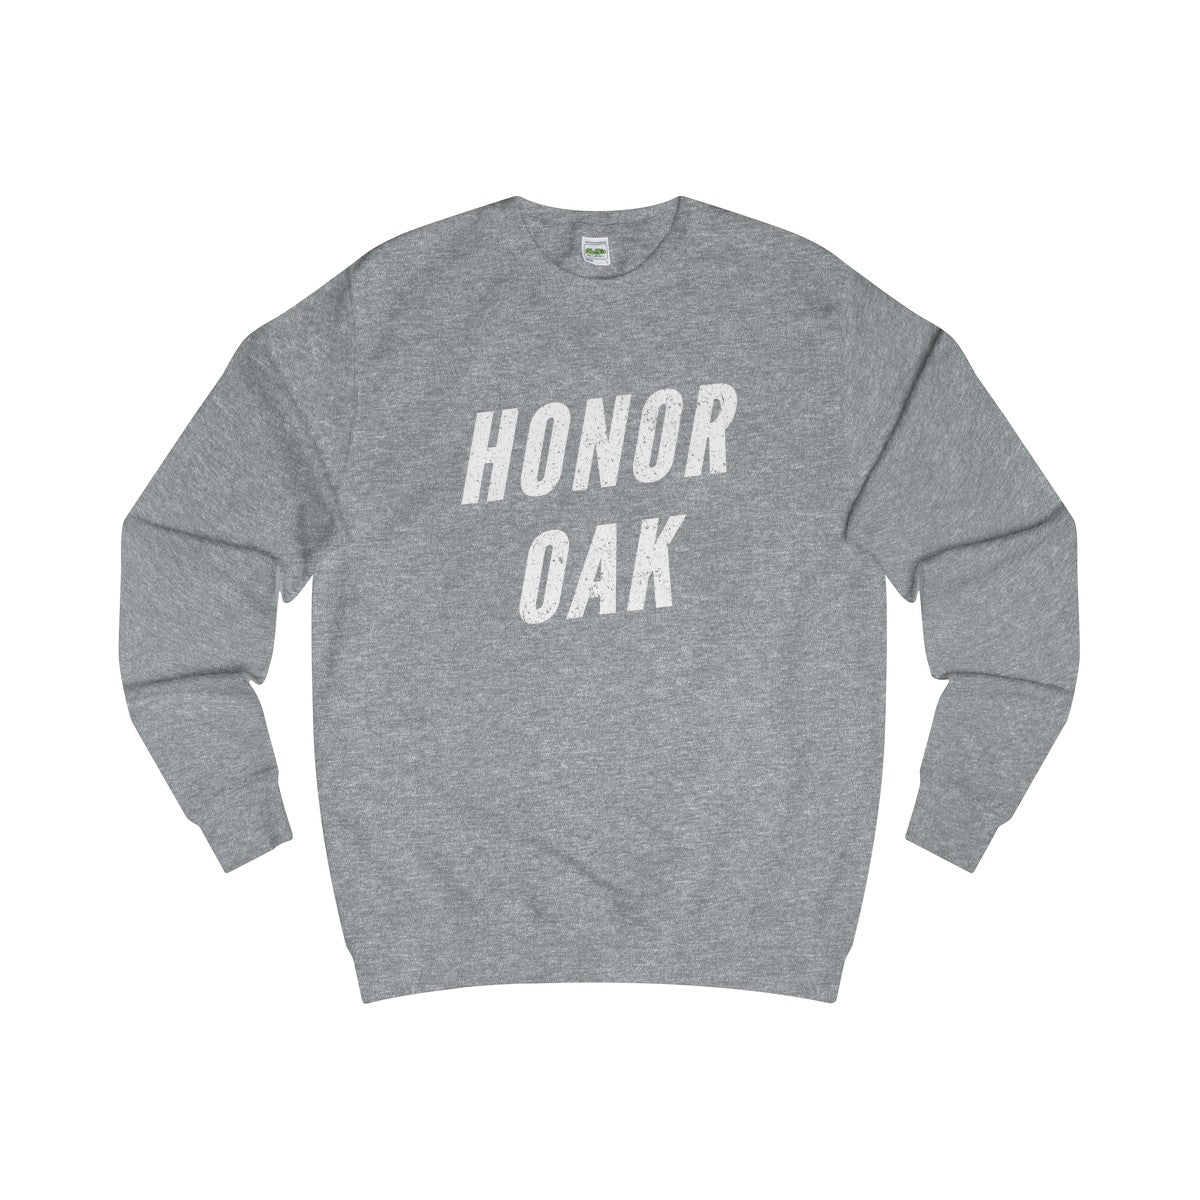 Honor Oak Sweater